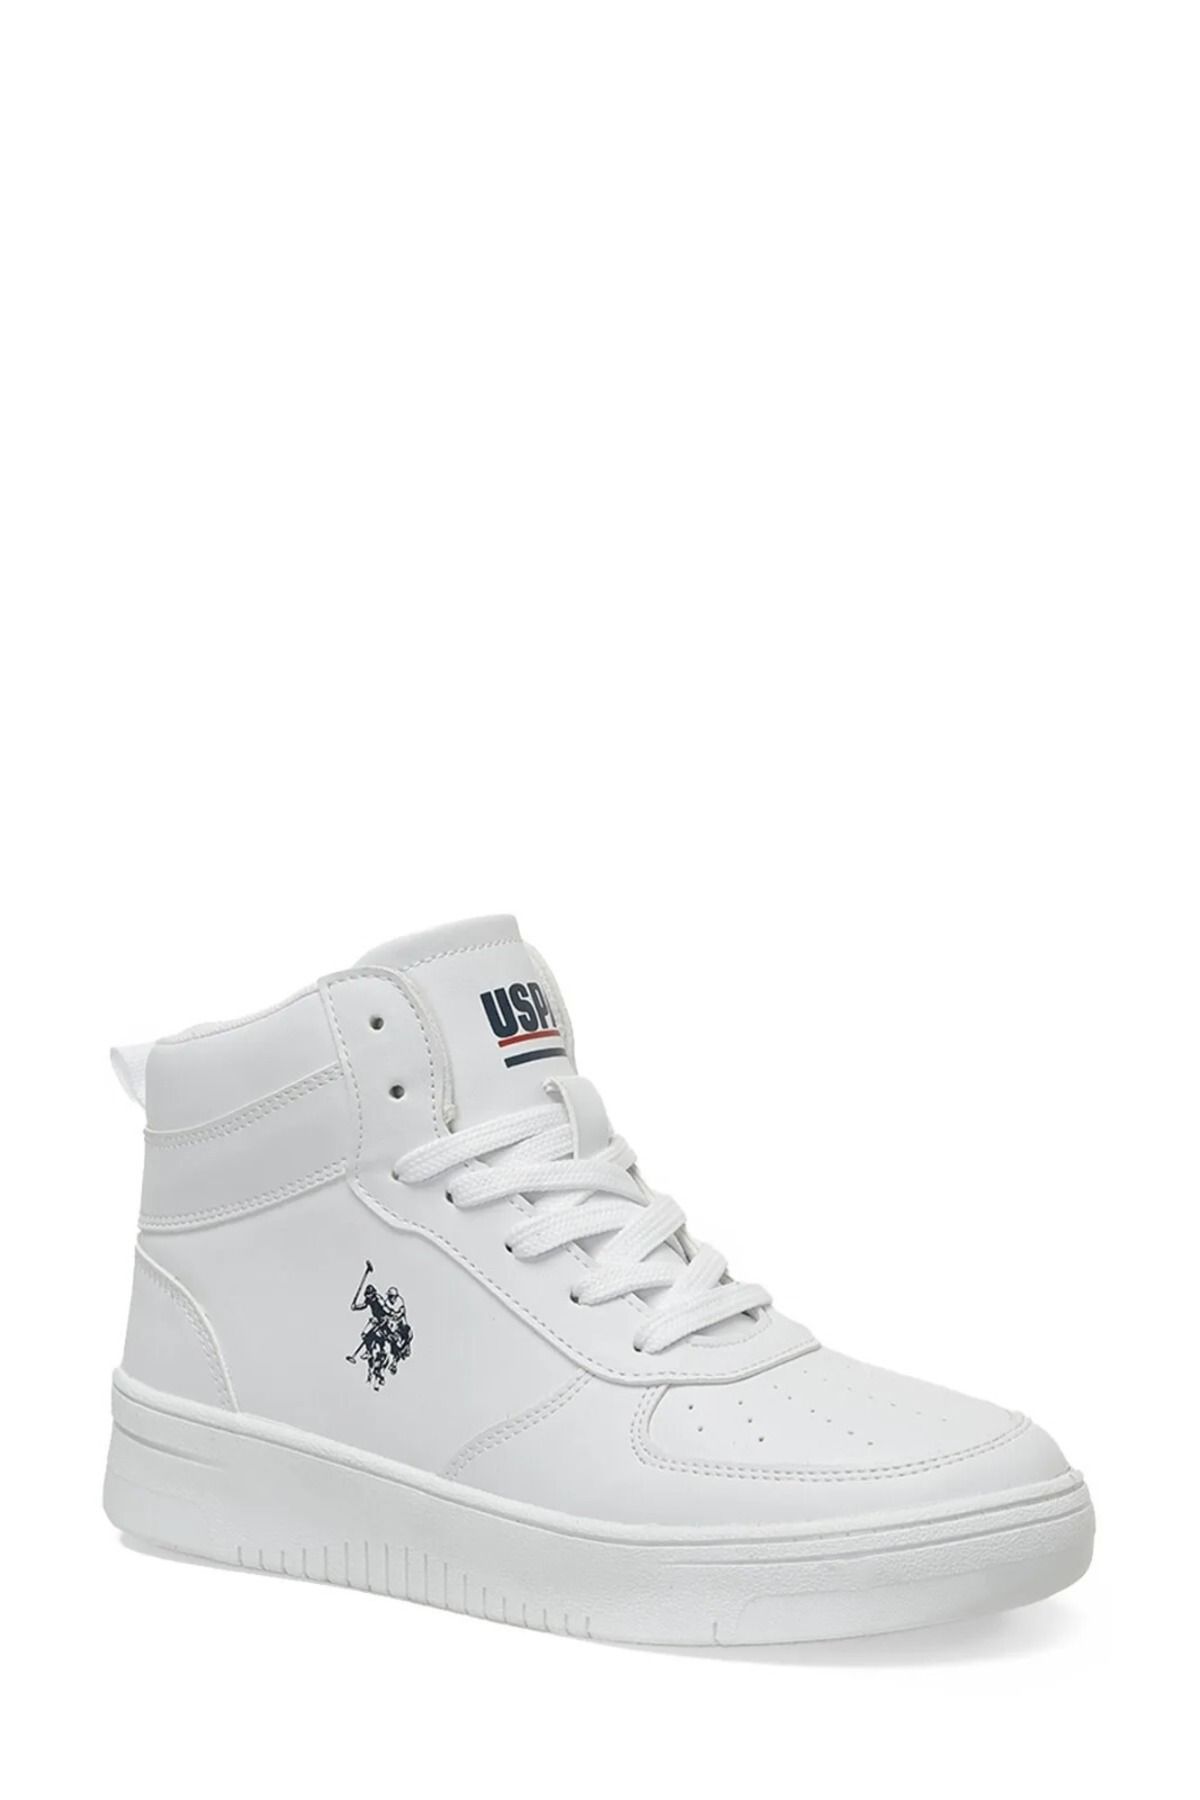 U.S. Polo Assn. Erkek Beyaz Bilekli Termo Taban Sneaker Outdoor Spor Ayakkabı